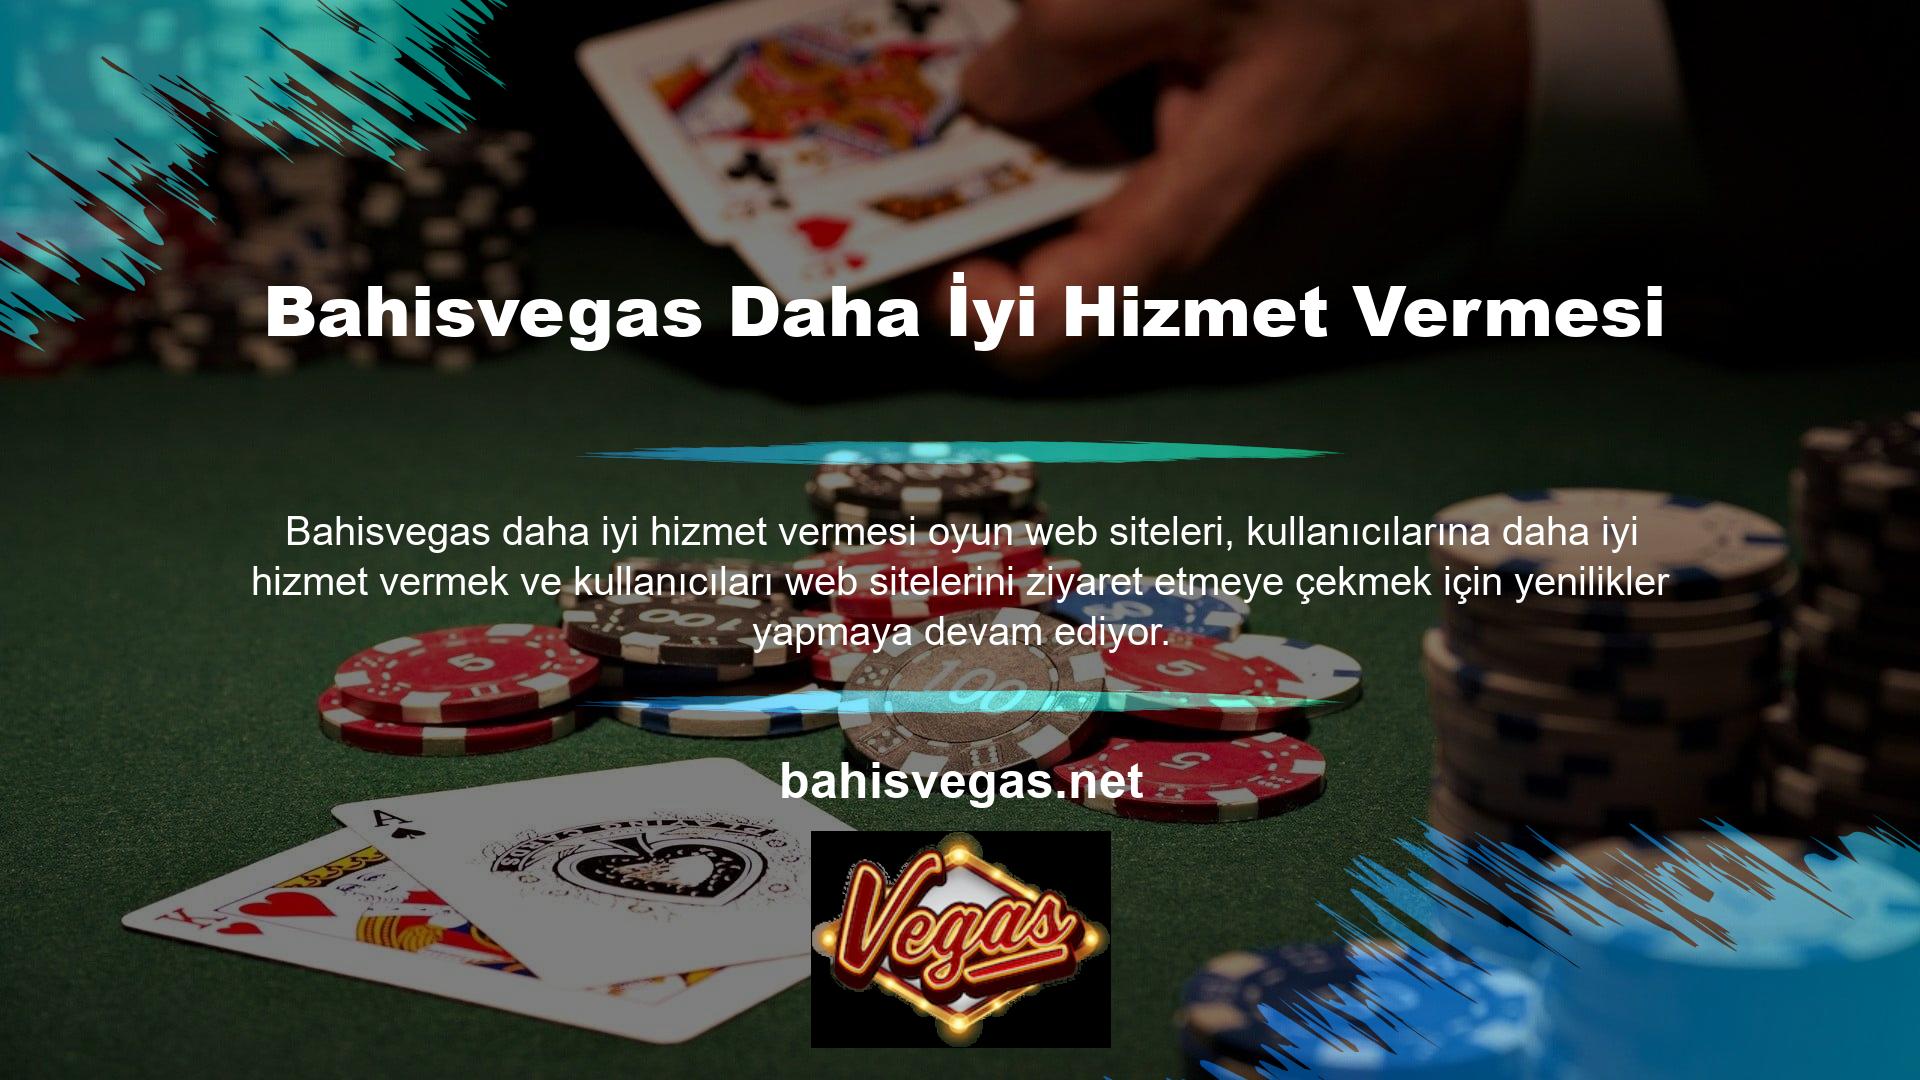 Öte yandan casino sitesi Bahisvegas, kullanıcıların daha iyi bir oyun deneyimi yaşamasına ve oynarken para kazanmasına yardımcı olmak için etkinlikler düzenliyor